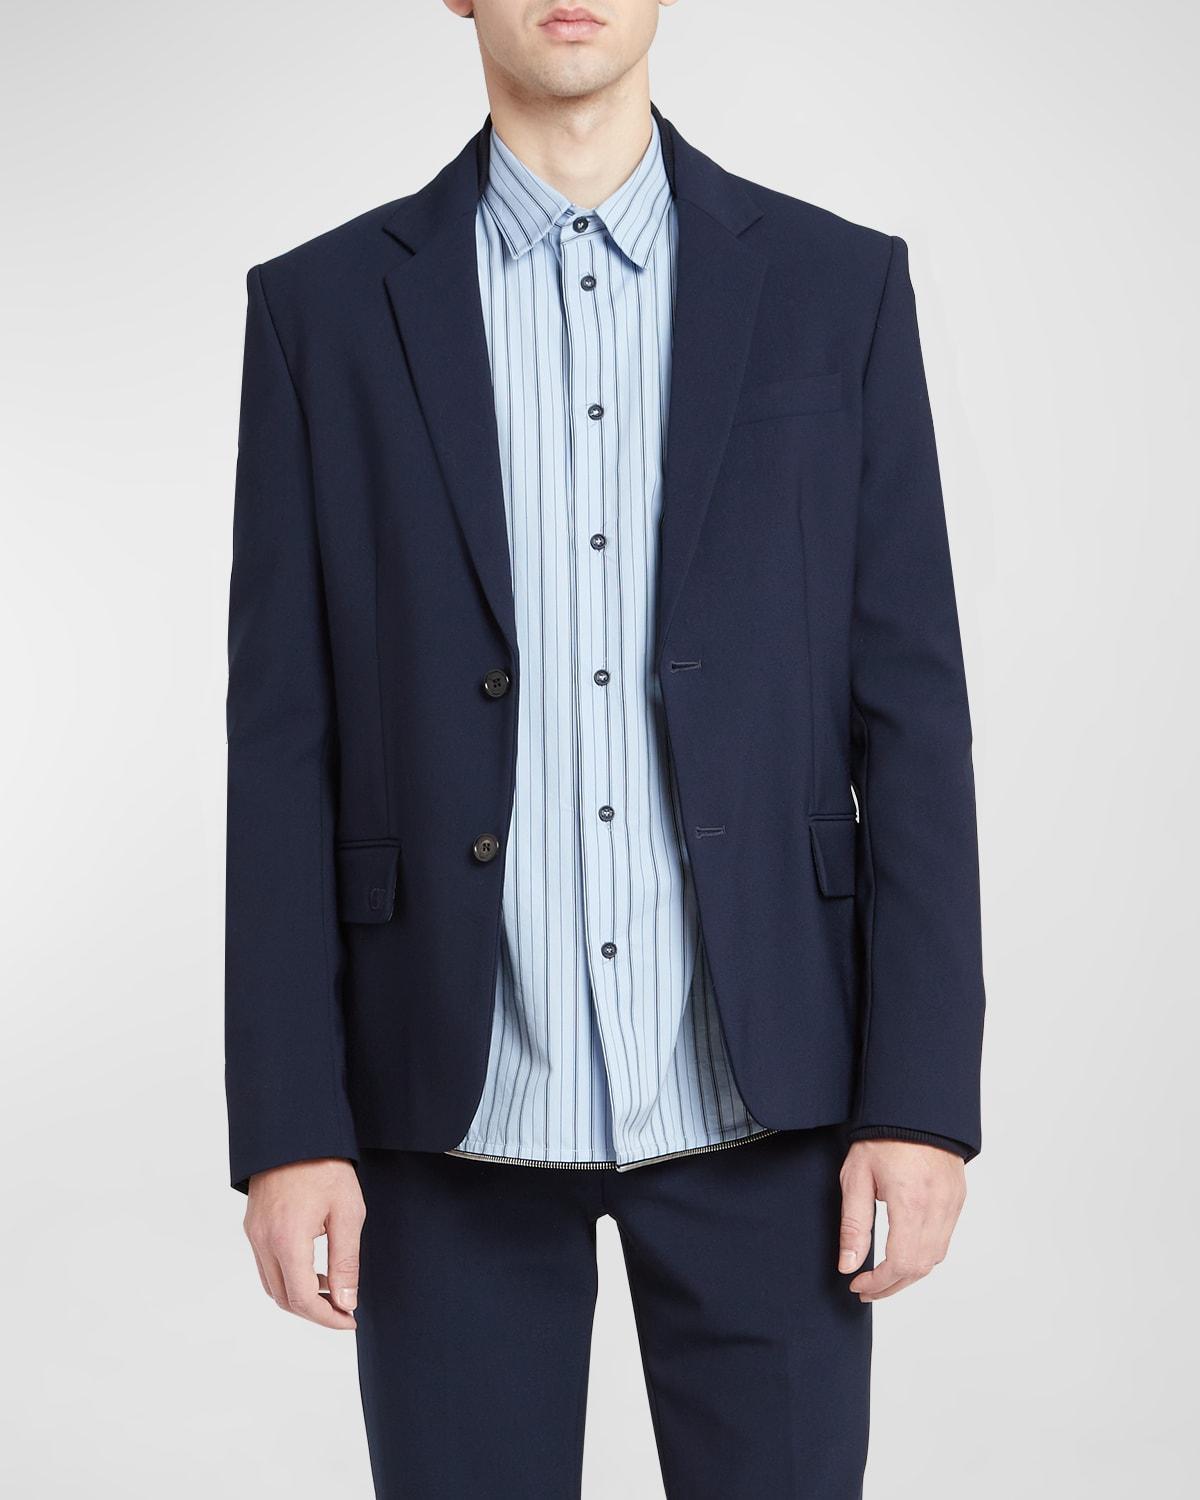 Off-White c/o Virgil Abloh Suit Jacket in Blue for Men